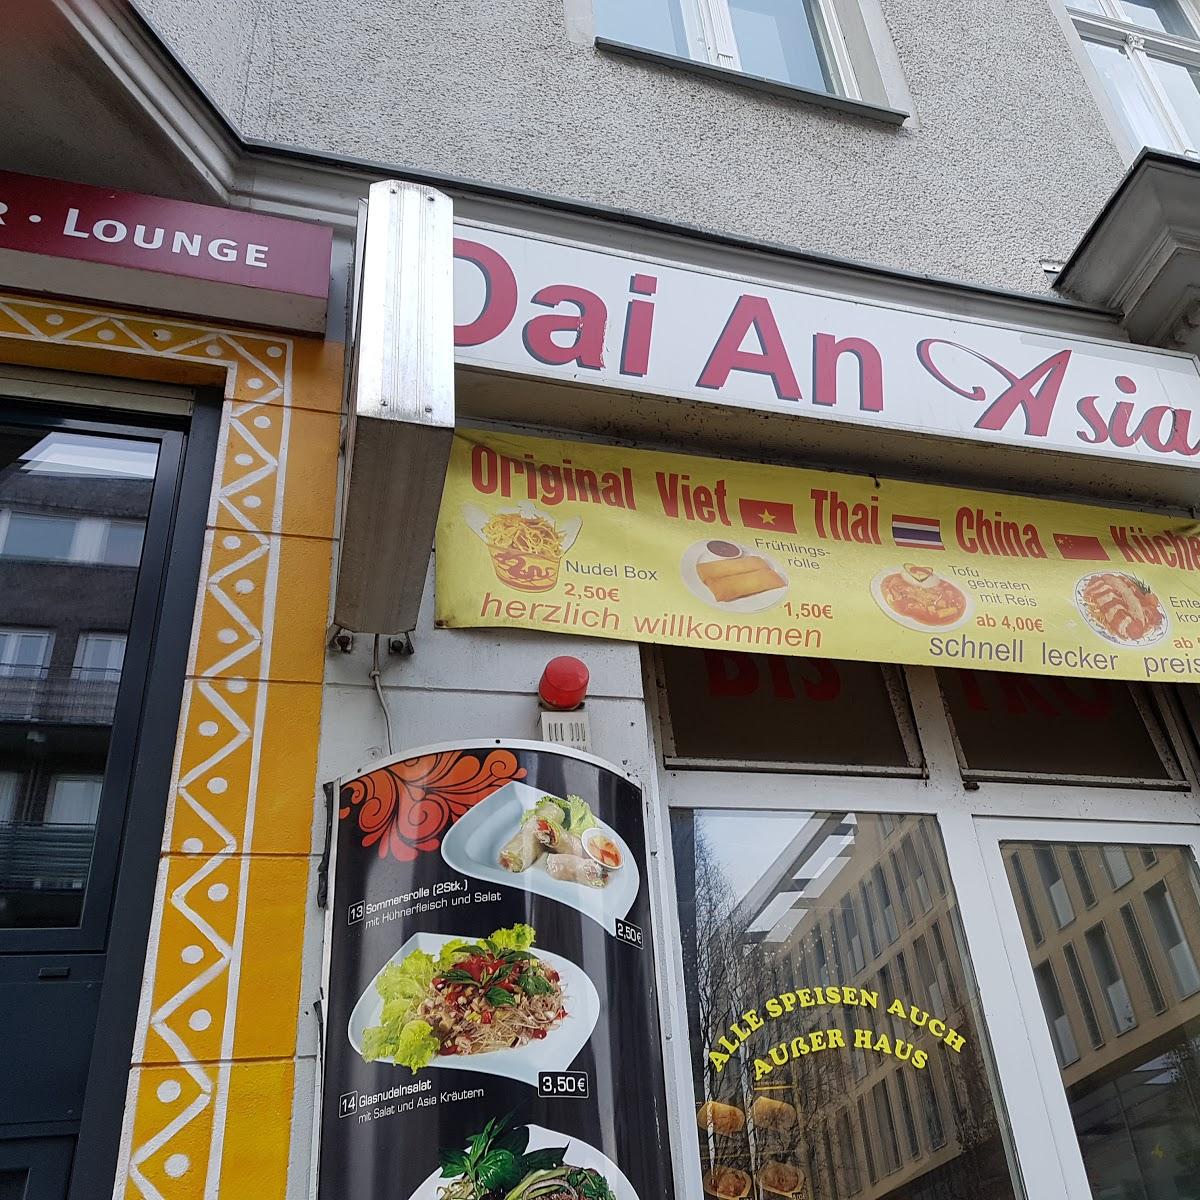 Restaurant "Dai An" in Berlin